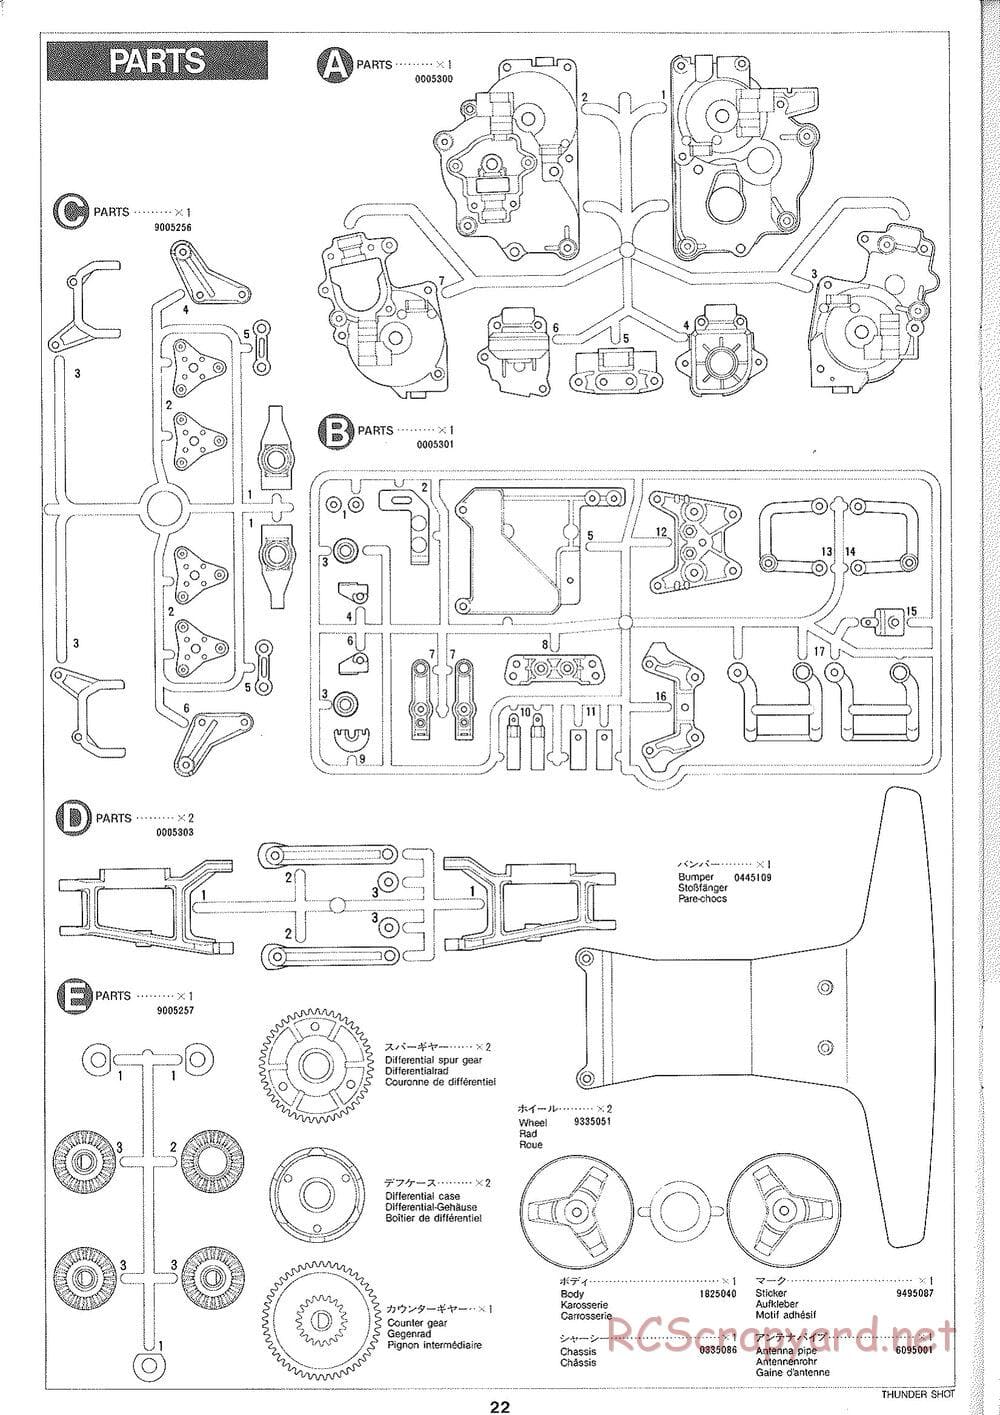 Tamiya - Thunder Shot - TS1 Chassis - Manual - Page 23